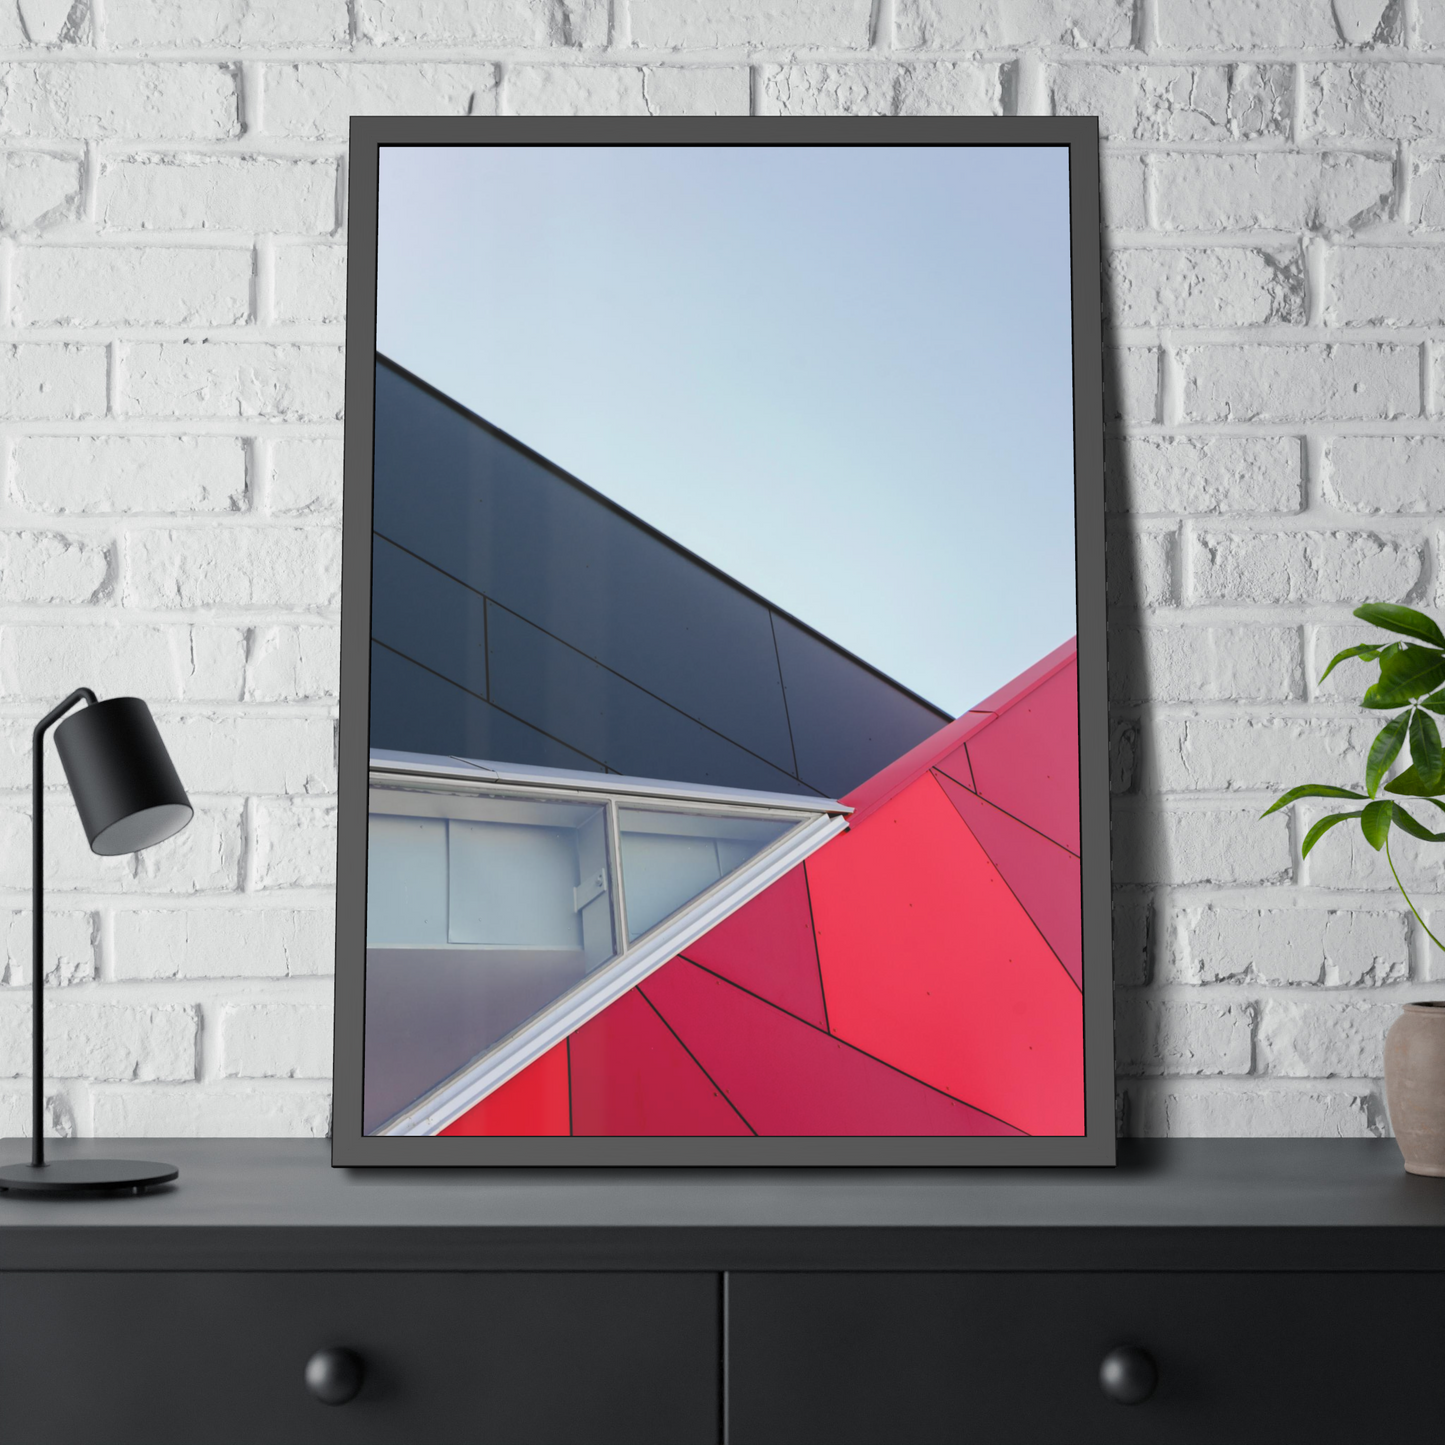 Dynamic Minimalism: Framed Canvas Art for a Bold Wall Display